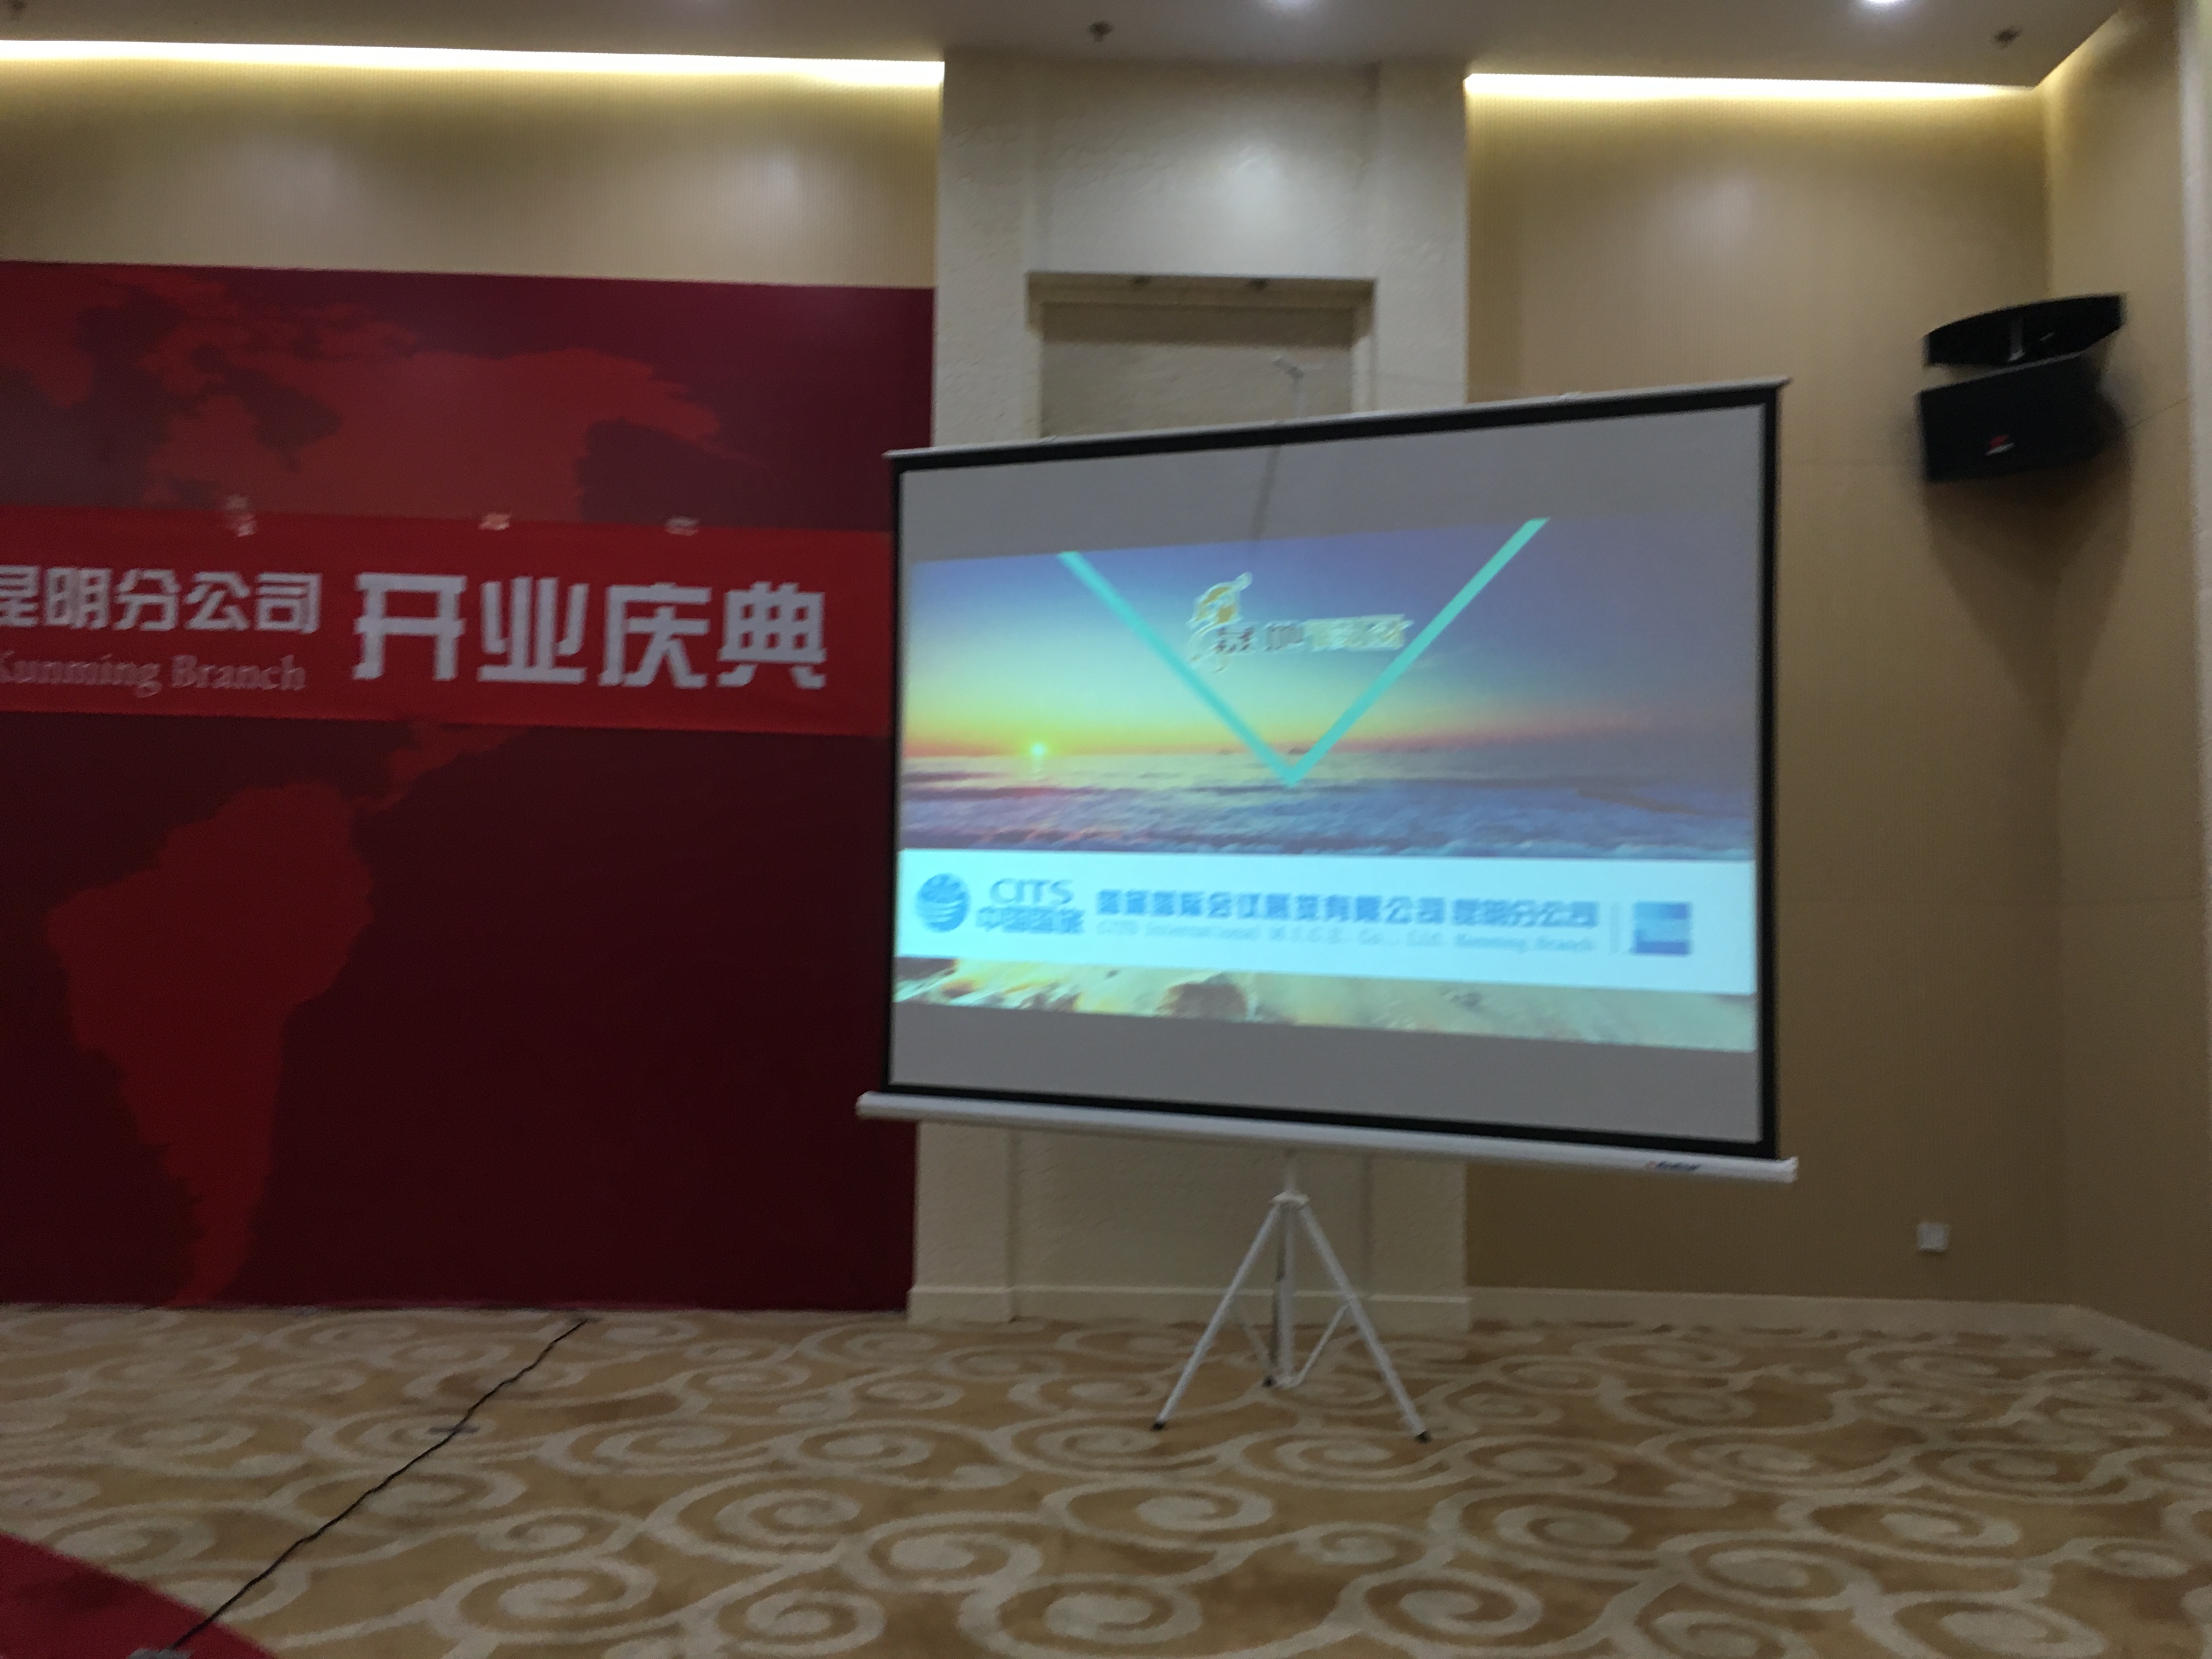 中国国旅国际会议展览公司正式入驻昆明_旅游